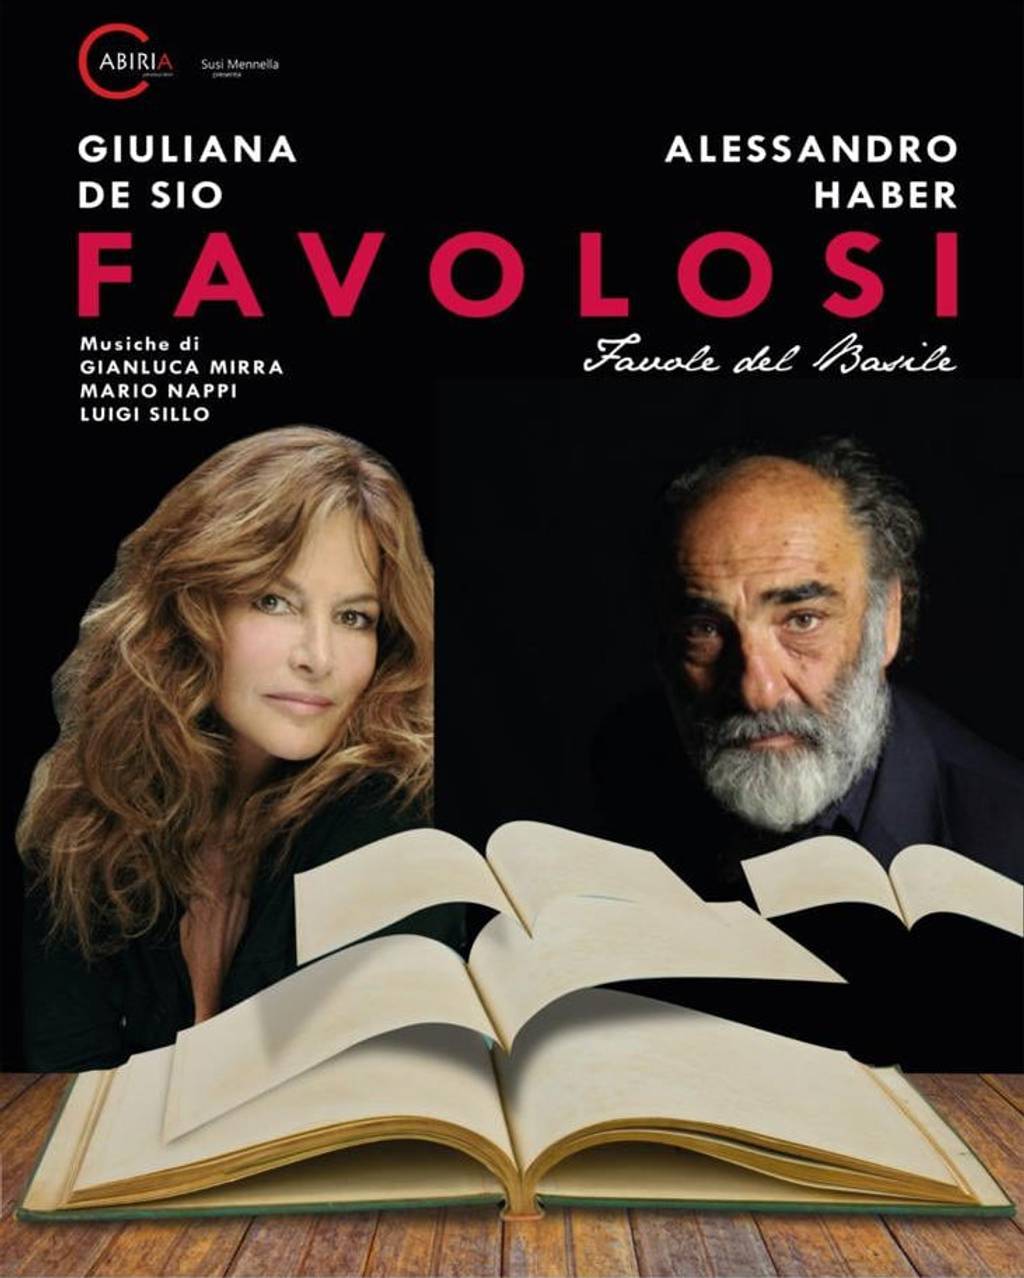 Giuliana de Sio and Alessandro Haber in Favolosi